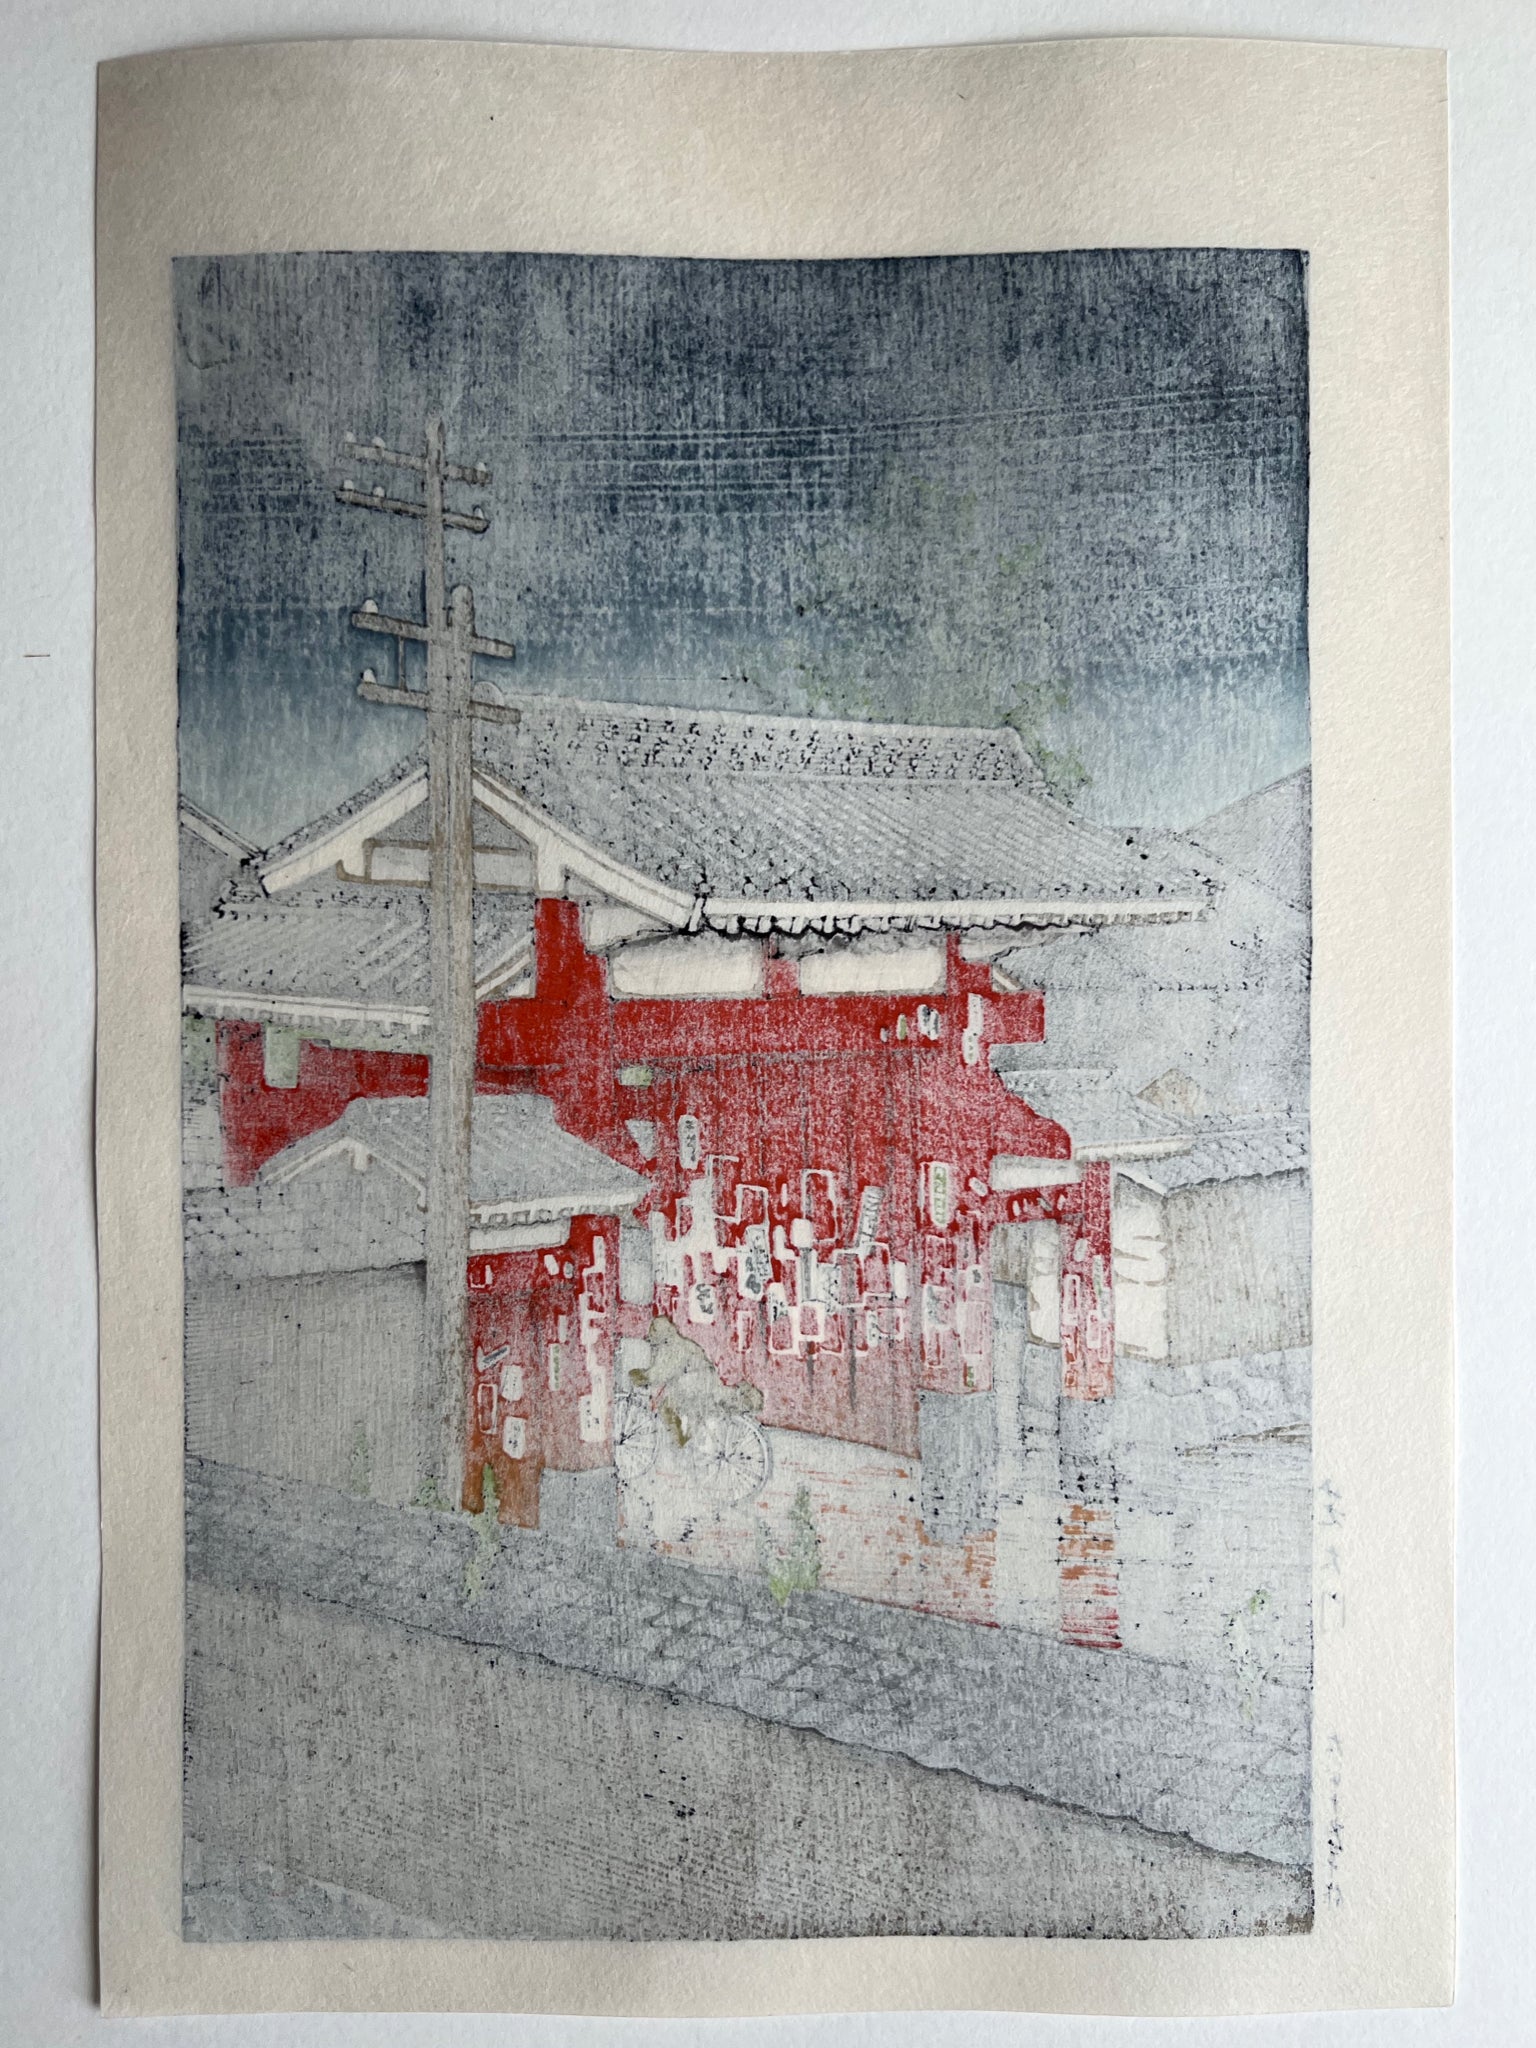 estampe japonaise un personnage à vélo franchit la grande porte rouge d'un temple sous la pluie à Tokyo, dos de l'estampe